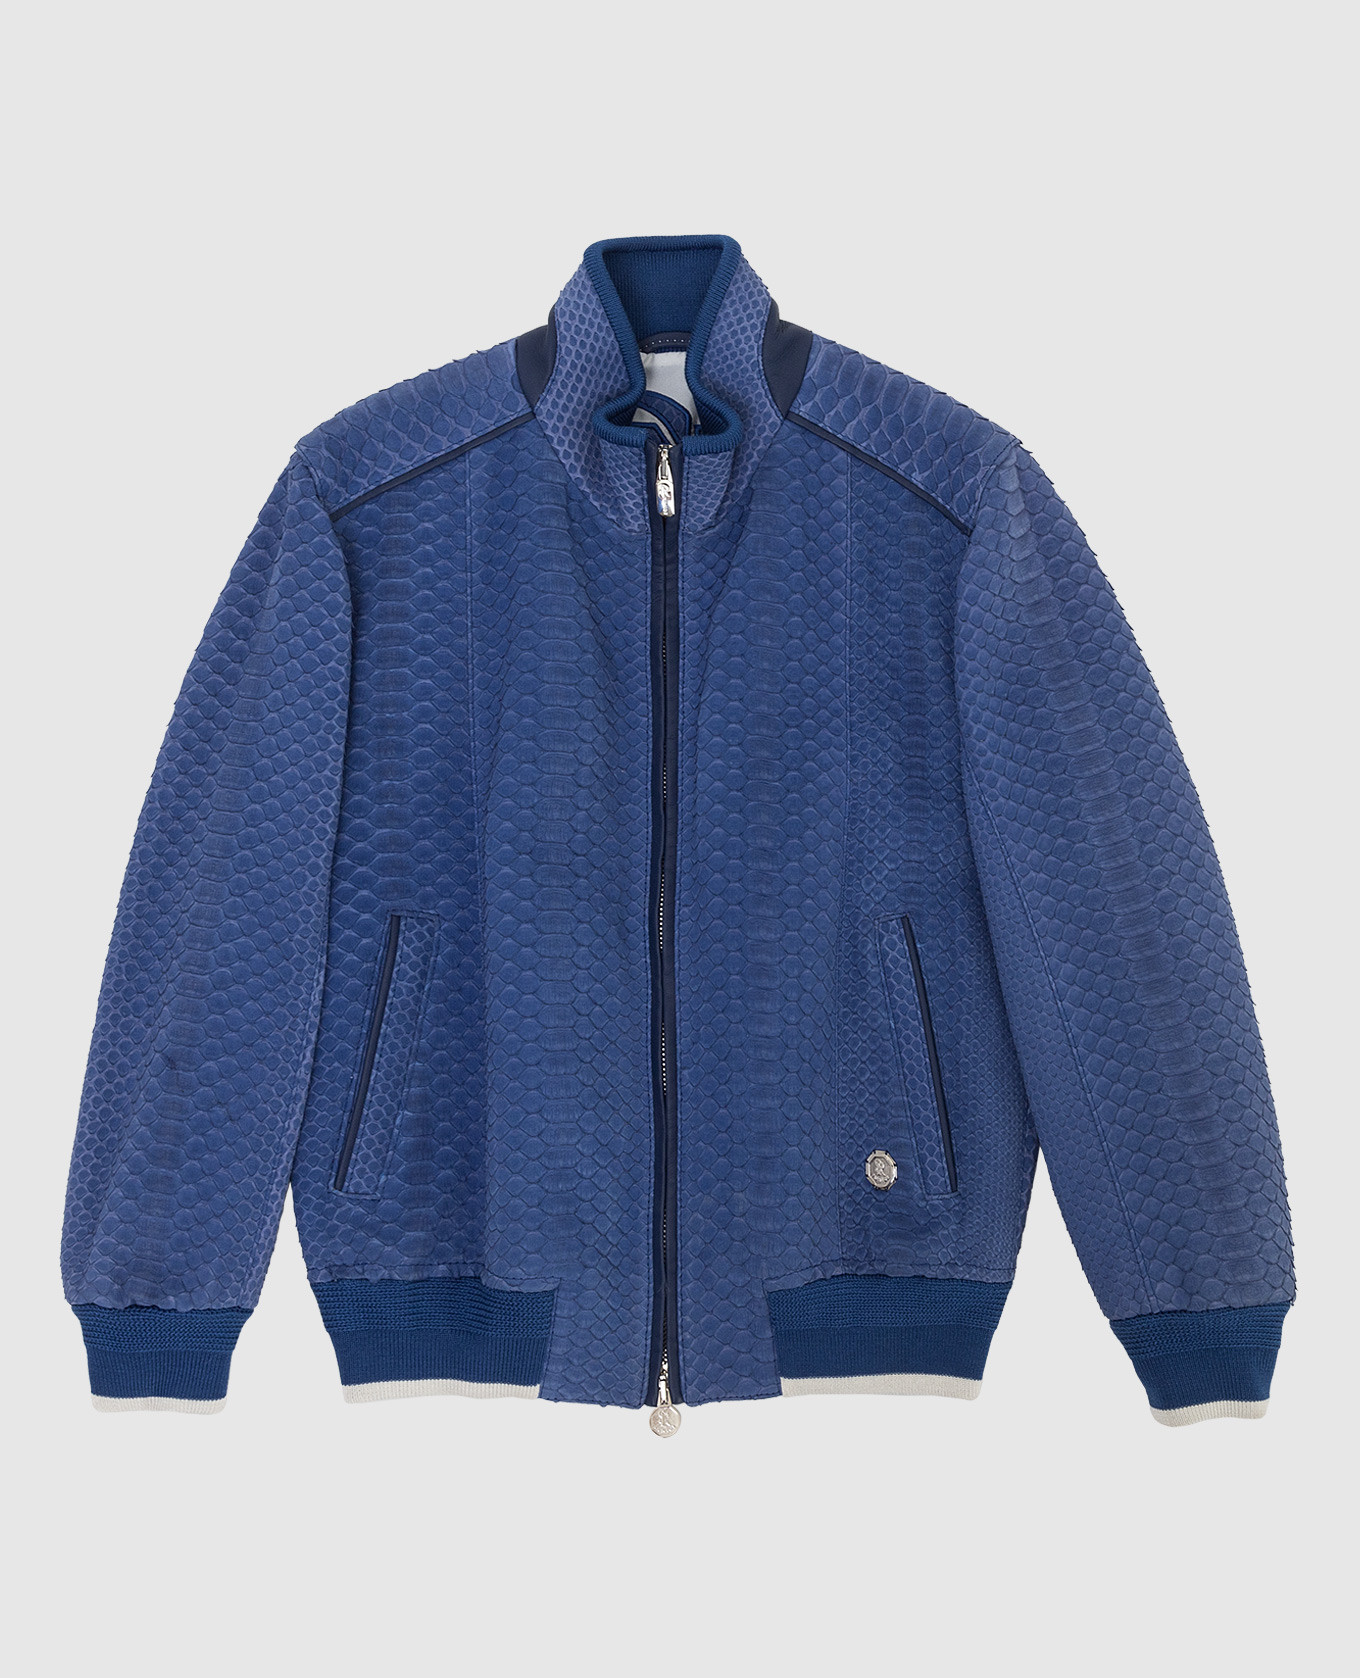 Children's blue python skin jacket